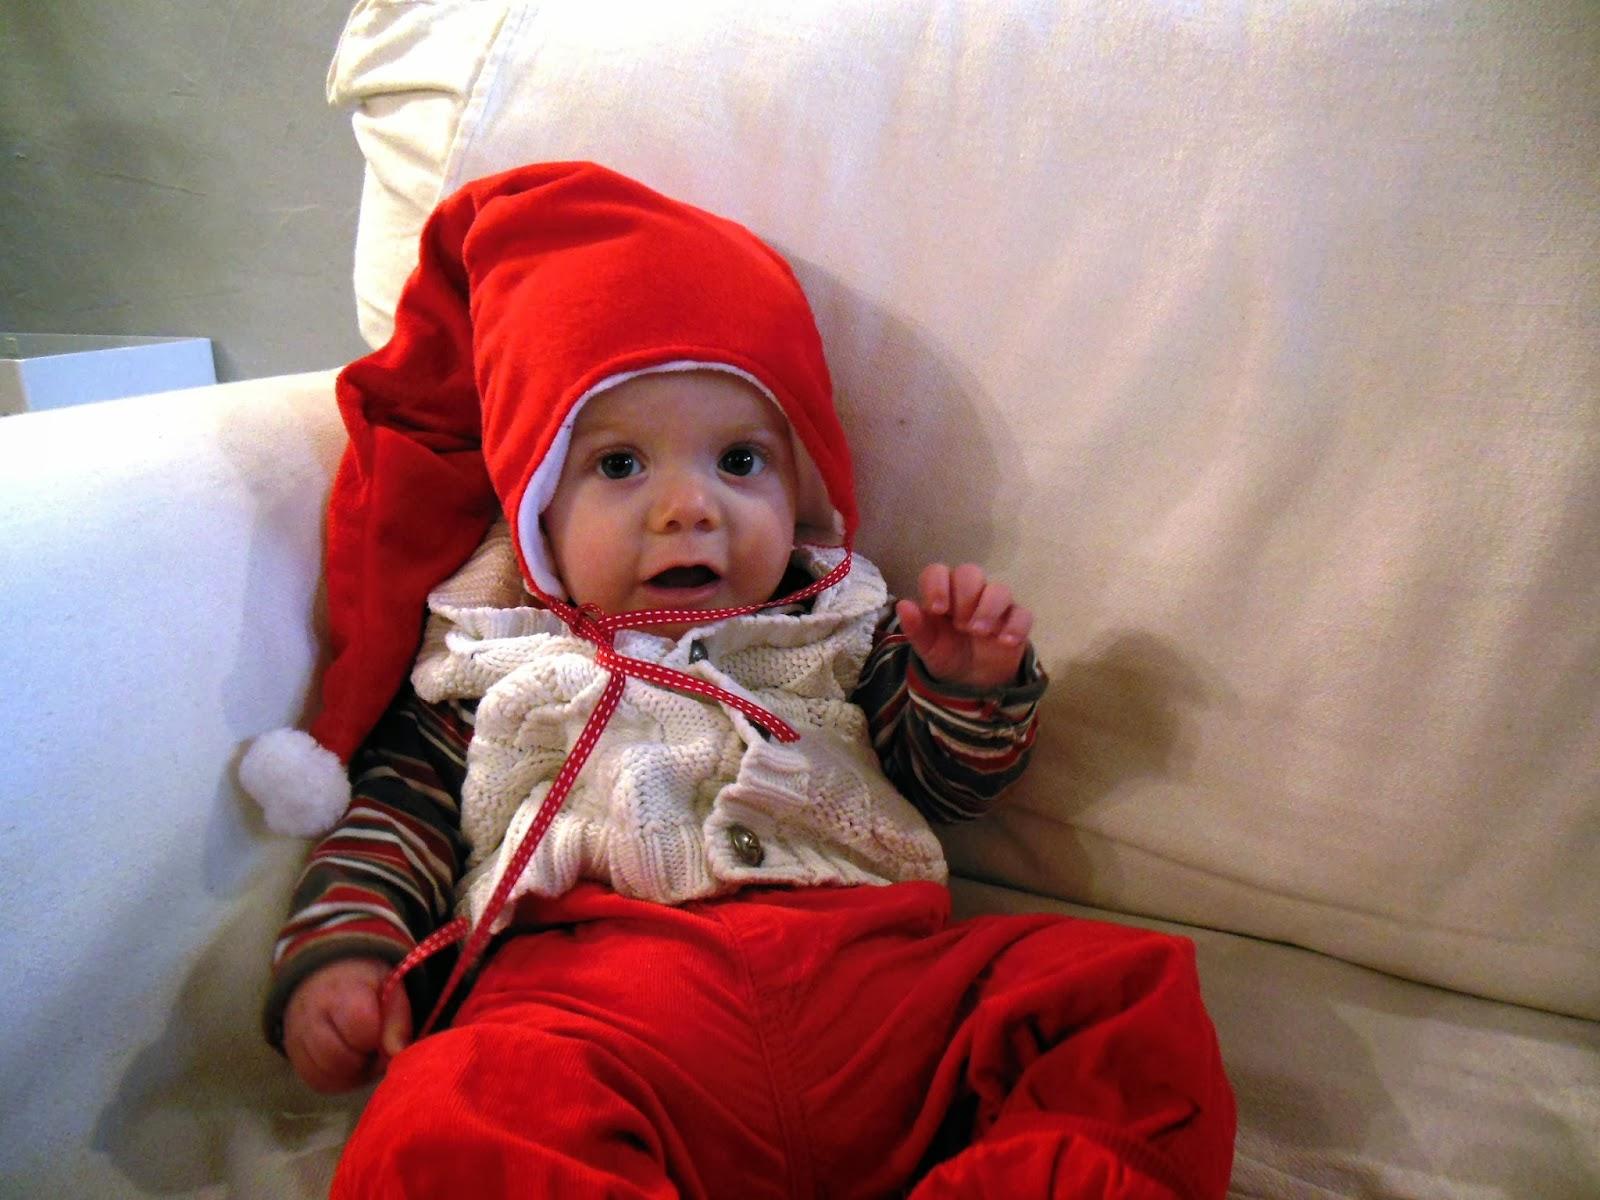 Noël arrive : commandez les bonnets pour vos bambins !